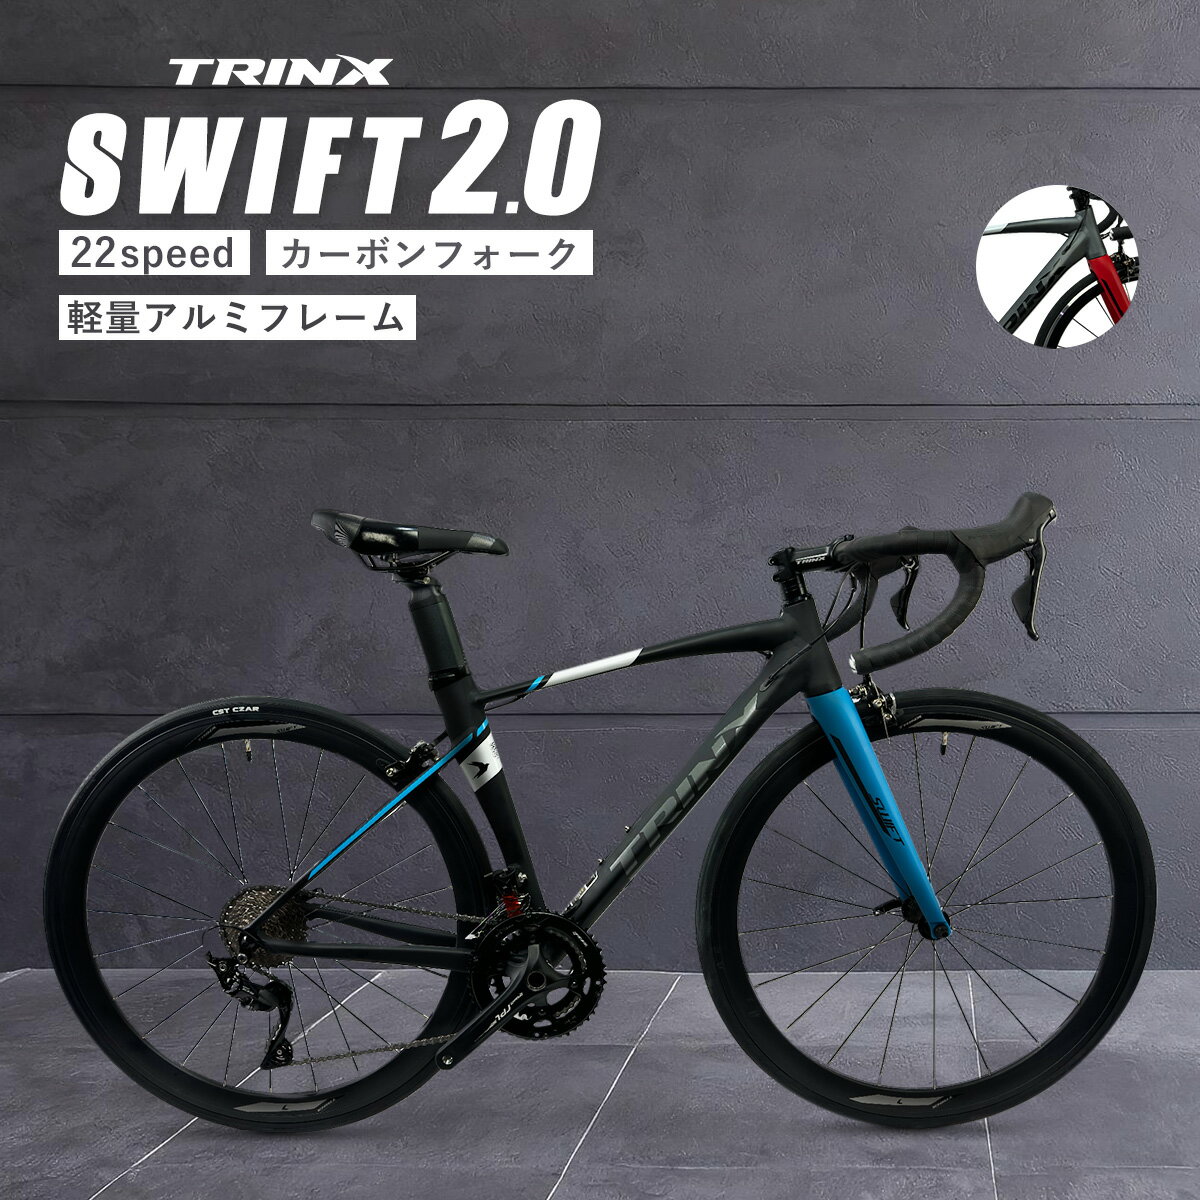 【6月1日限定★ポイント5倍】本格派ロードバイク レース 入門からレース・競技用として TRINX SWIFT 自転車 カーボン シマノ 22段変速 700c サイクリング